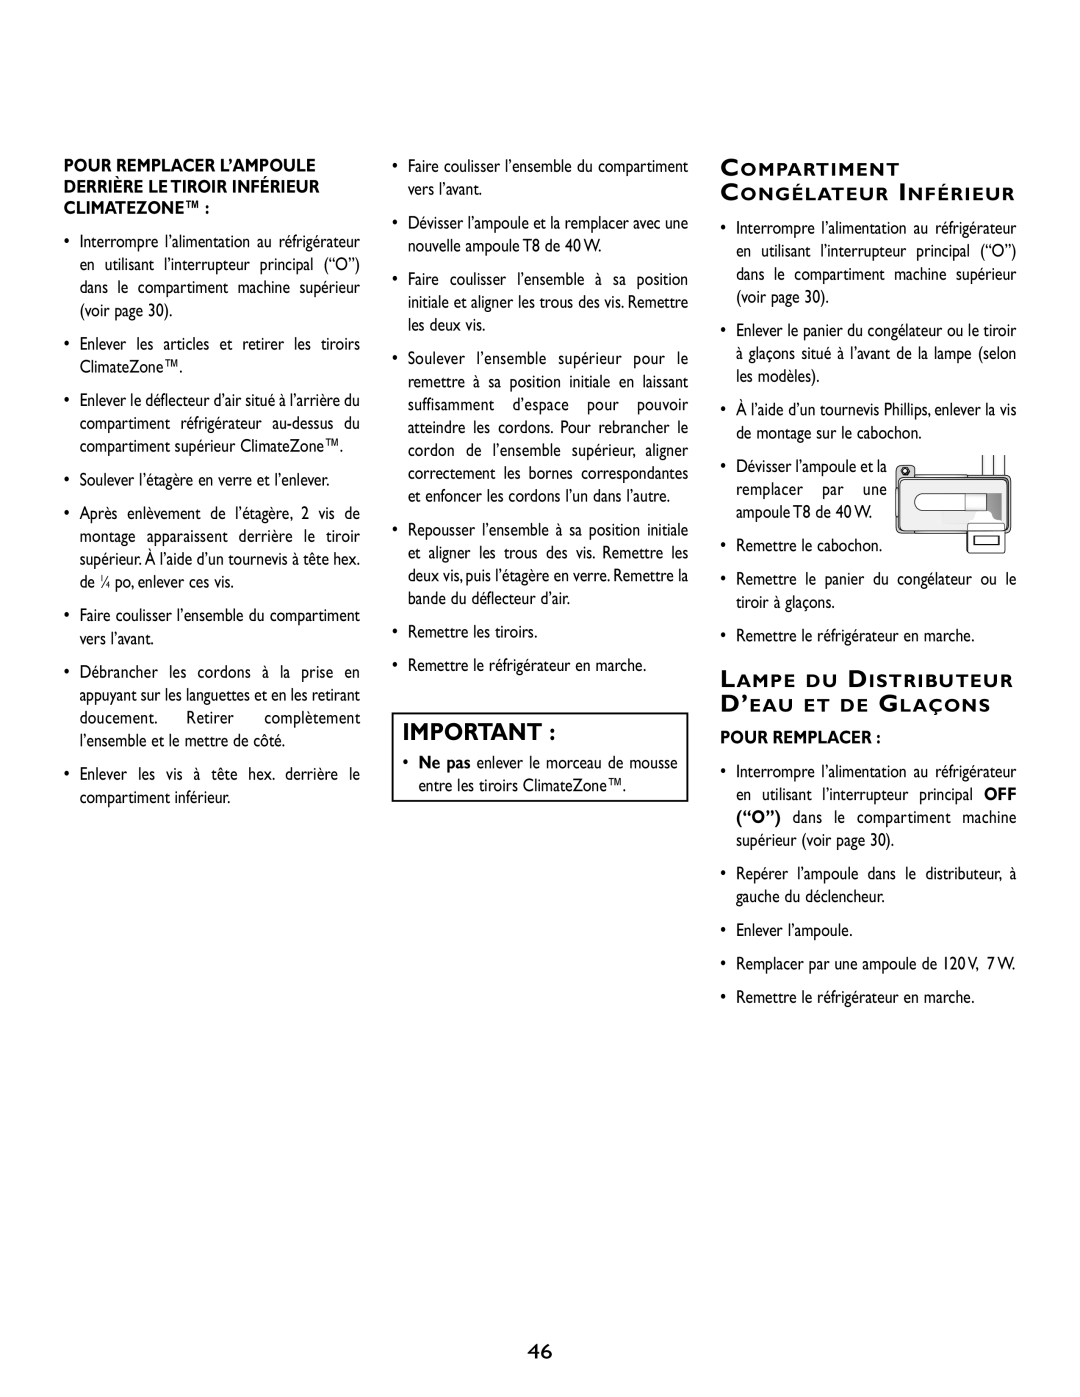 Maytag JS48FSDBFA, RJRS4881A Compartiment Congélateur Inférieur, Lampe Du Distributeur D’Eau Et De Glaçons, Pour Remplacer 